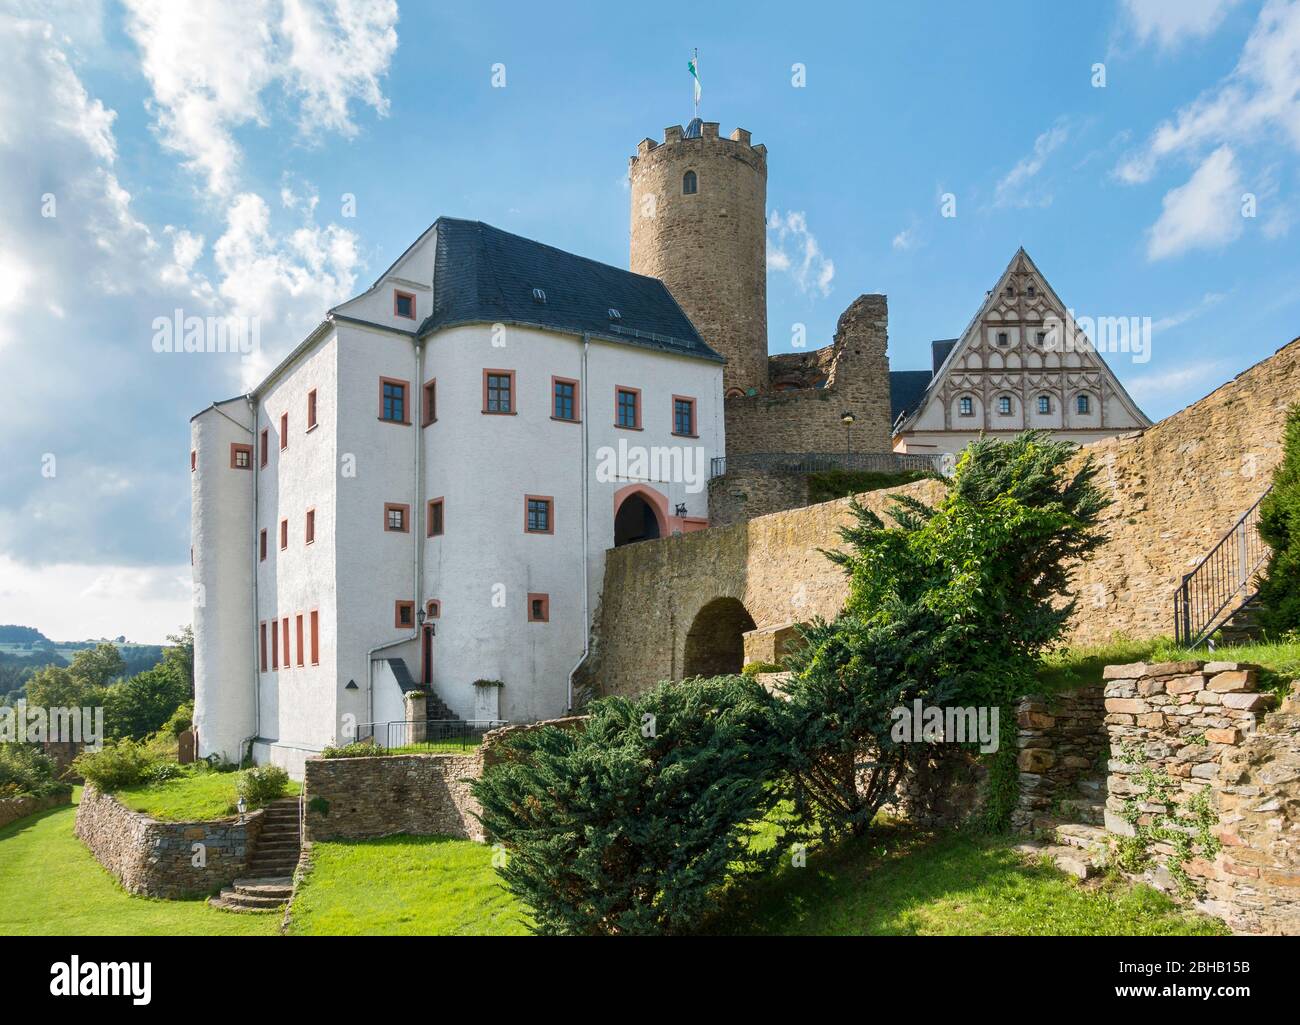 Germany, Saxony, Drebach - Scharfenstein, Scharfenstein Castle, in the ...